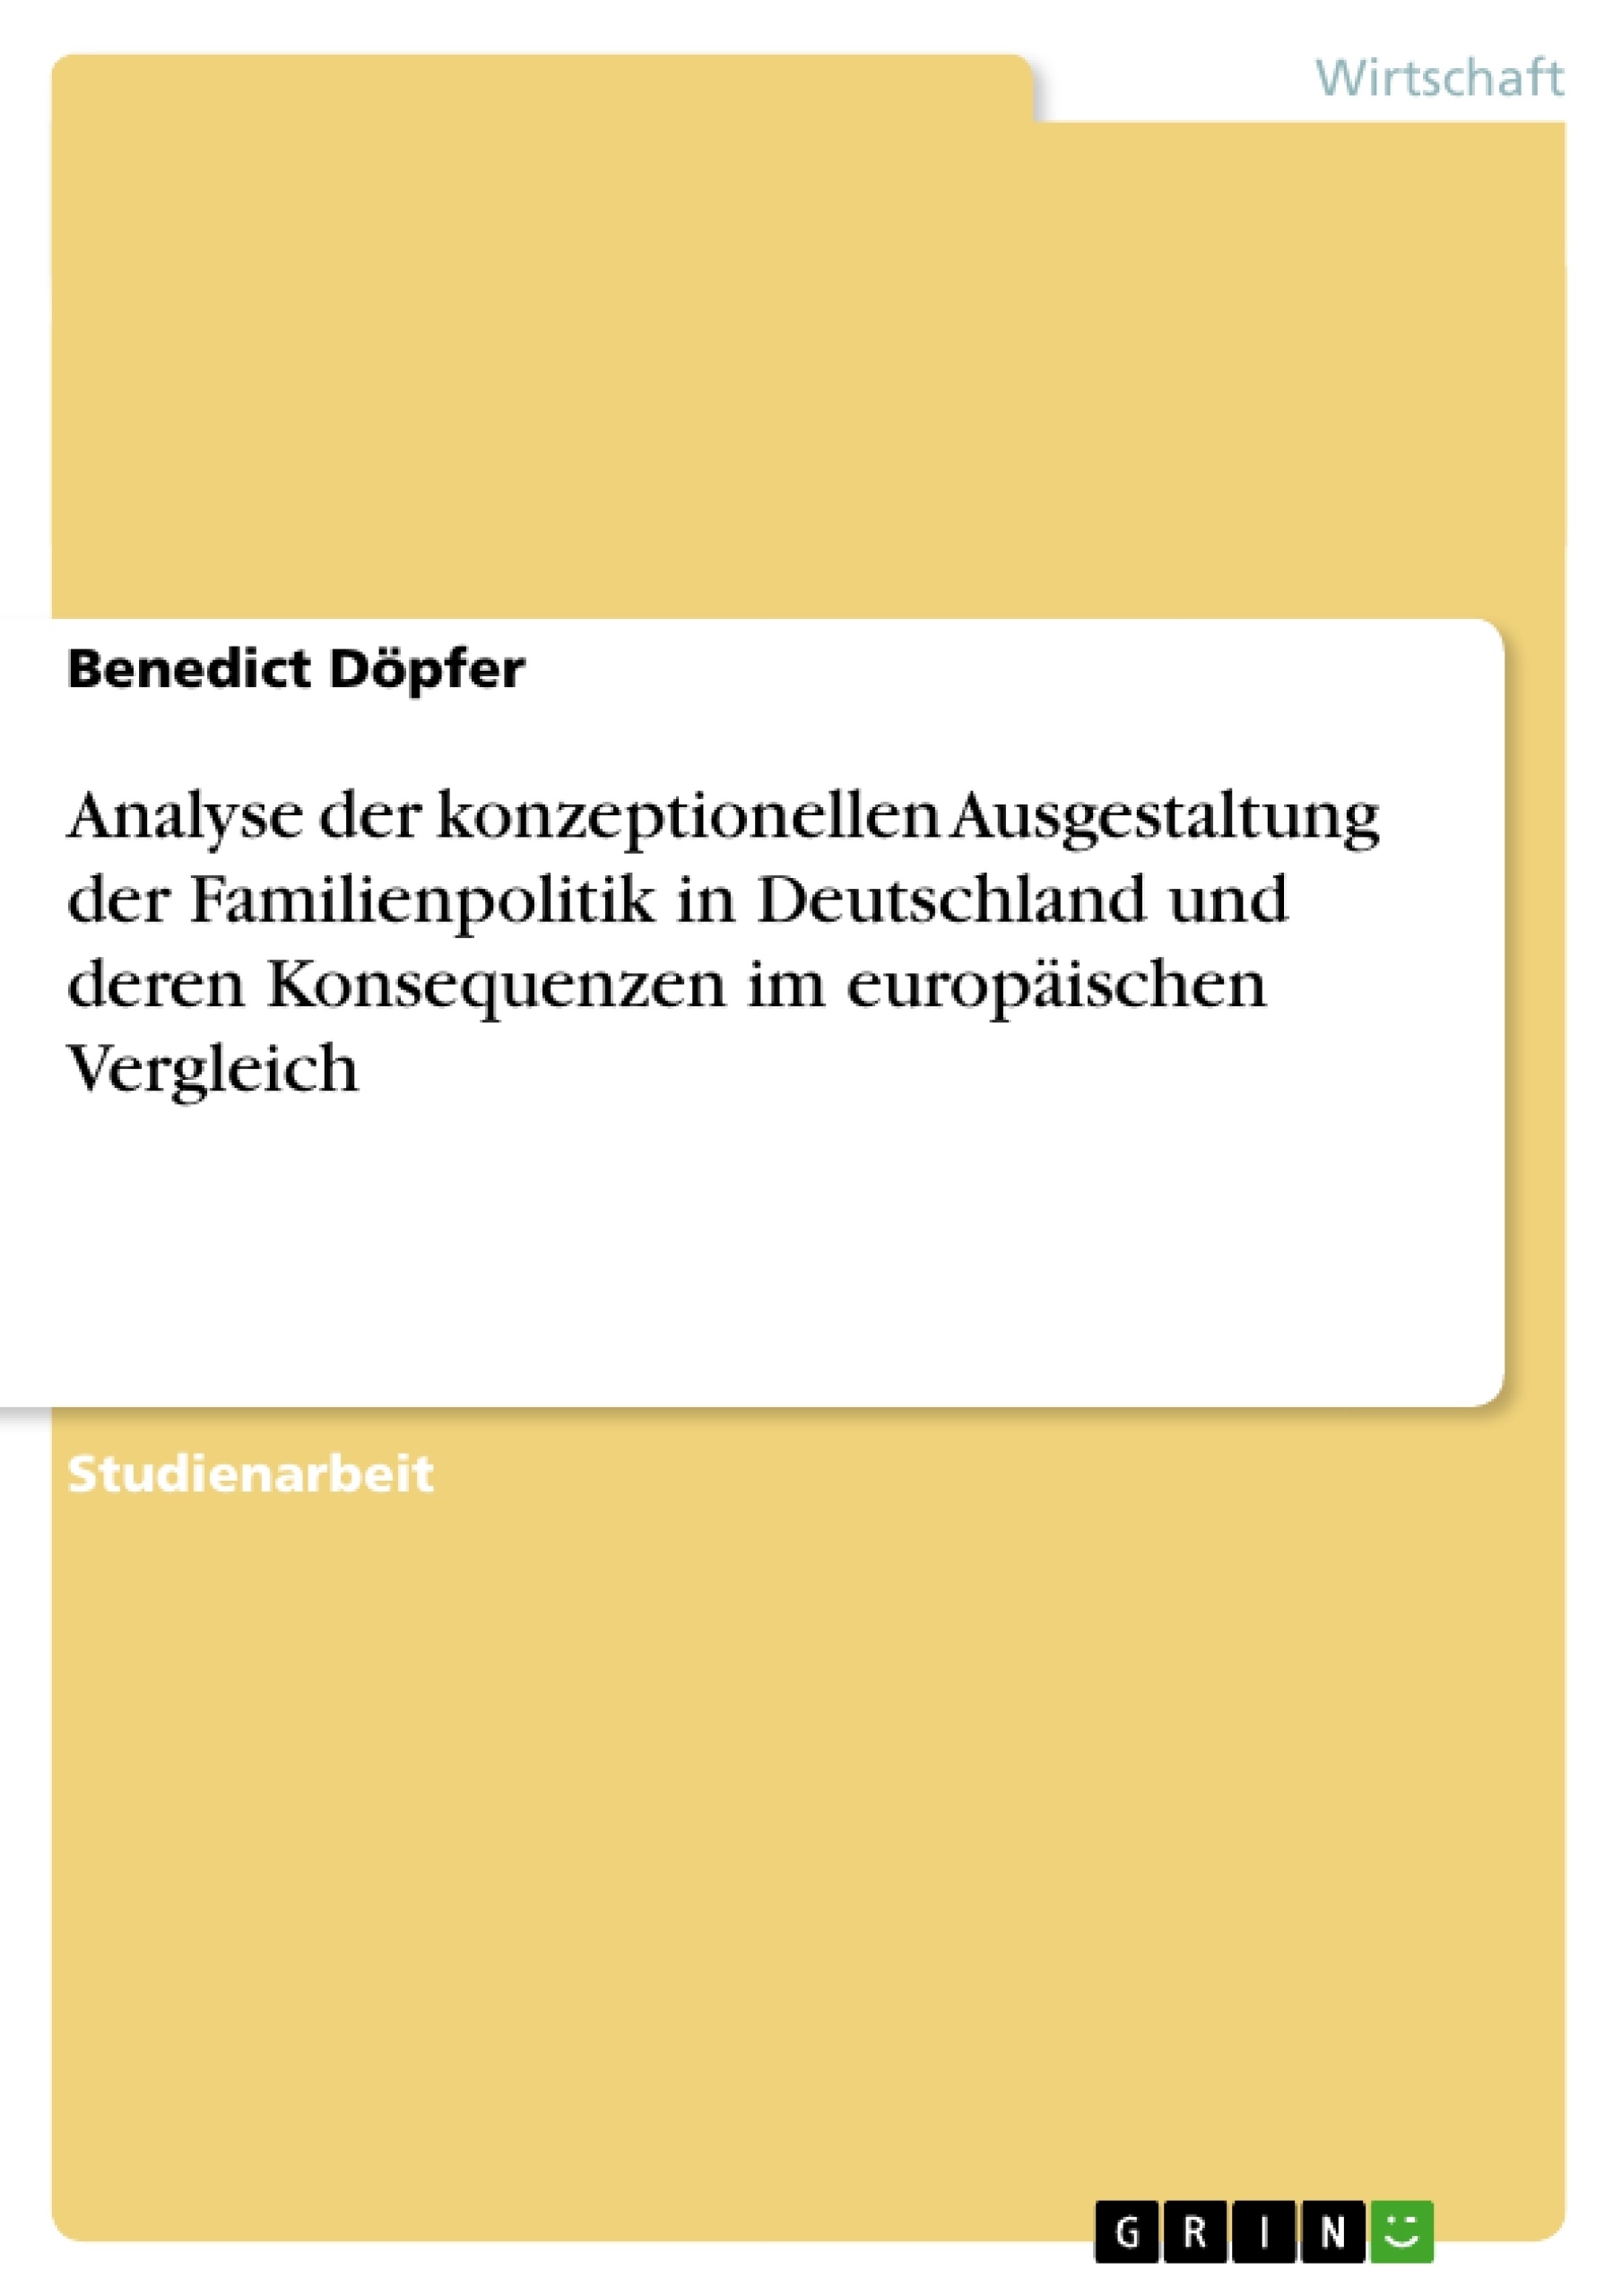 Título: Analyse der konzeptionellen Ausgestaltung der Familienpolitik in Deutschland und deren Konsequenzen im europäischen Vergleich